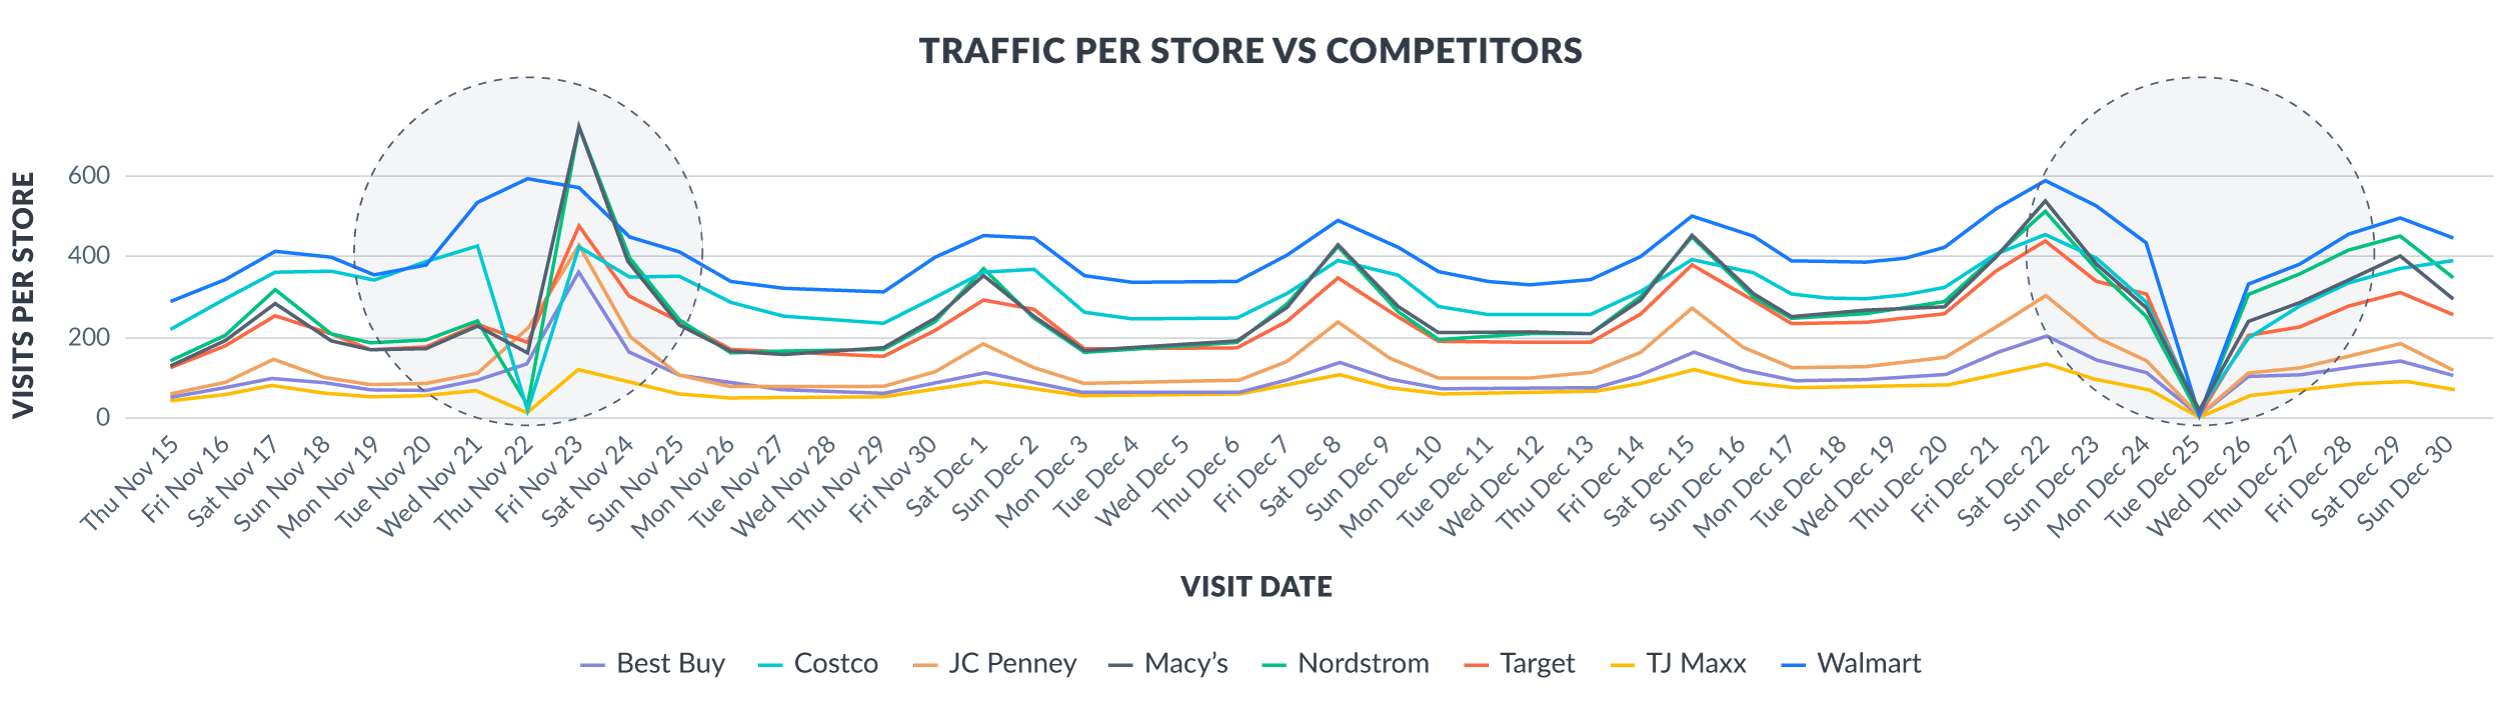 Traffic per store vs competitors